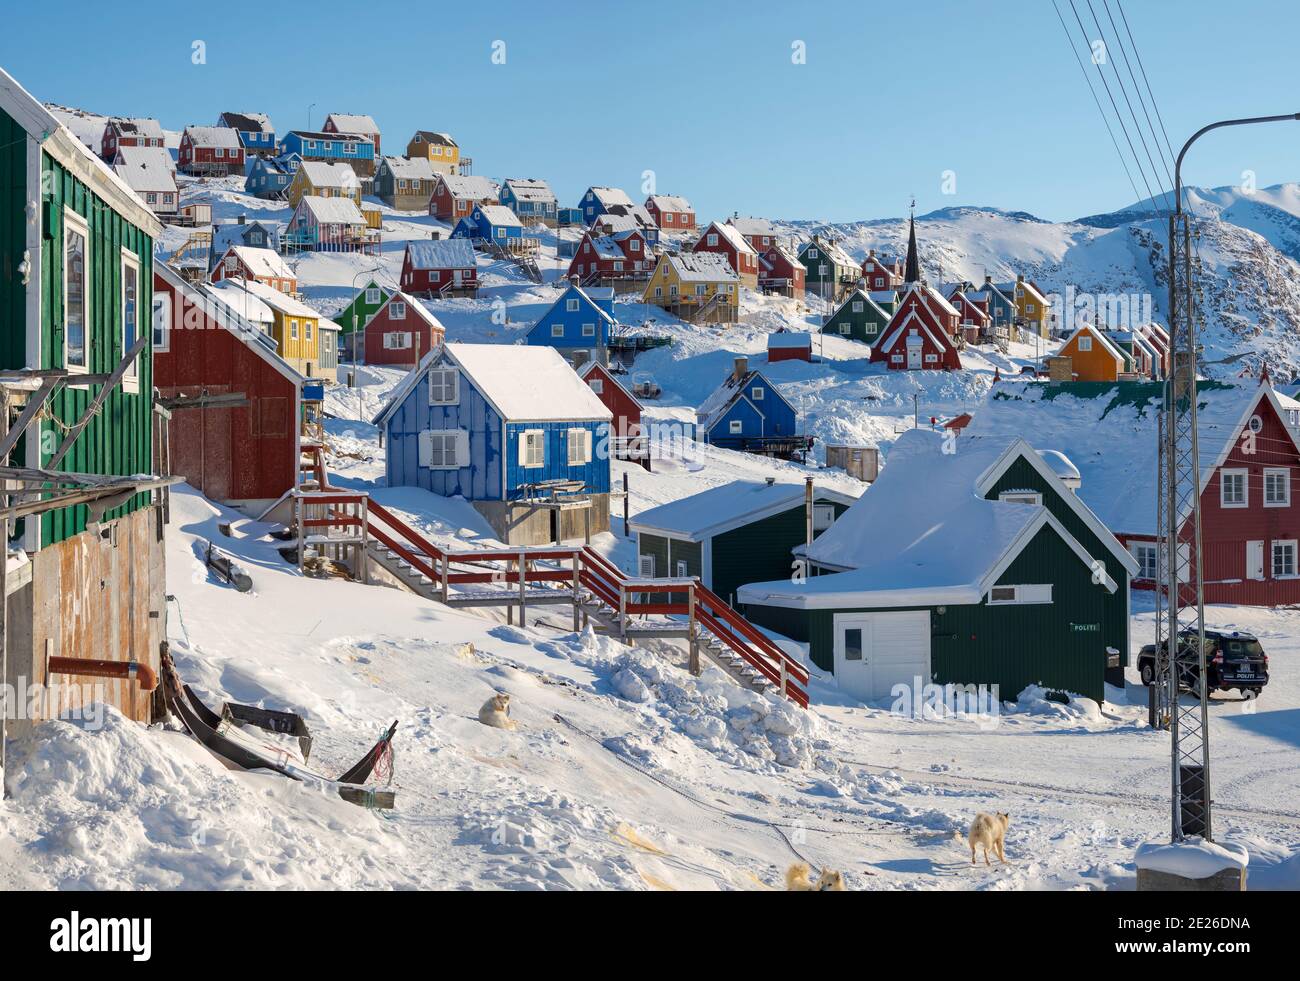 Hivernent dans la ville d'Upernavik, au nord du Groenland, sur les rives de la baie de Baffin. Amérique , Danemark, Groenland Banque D'Images